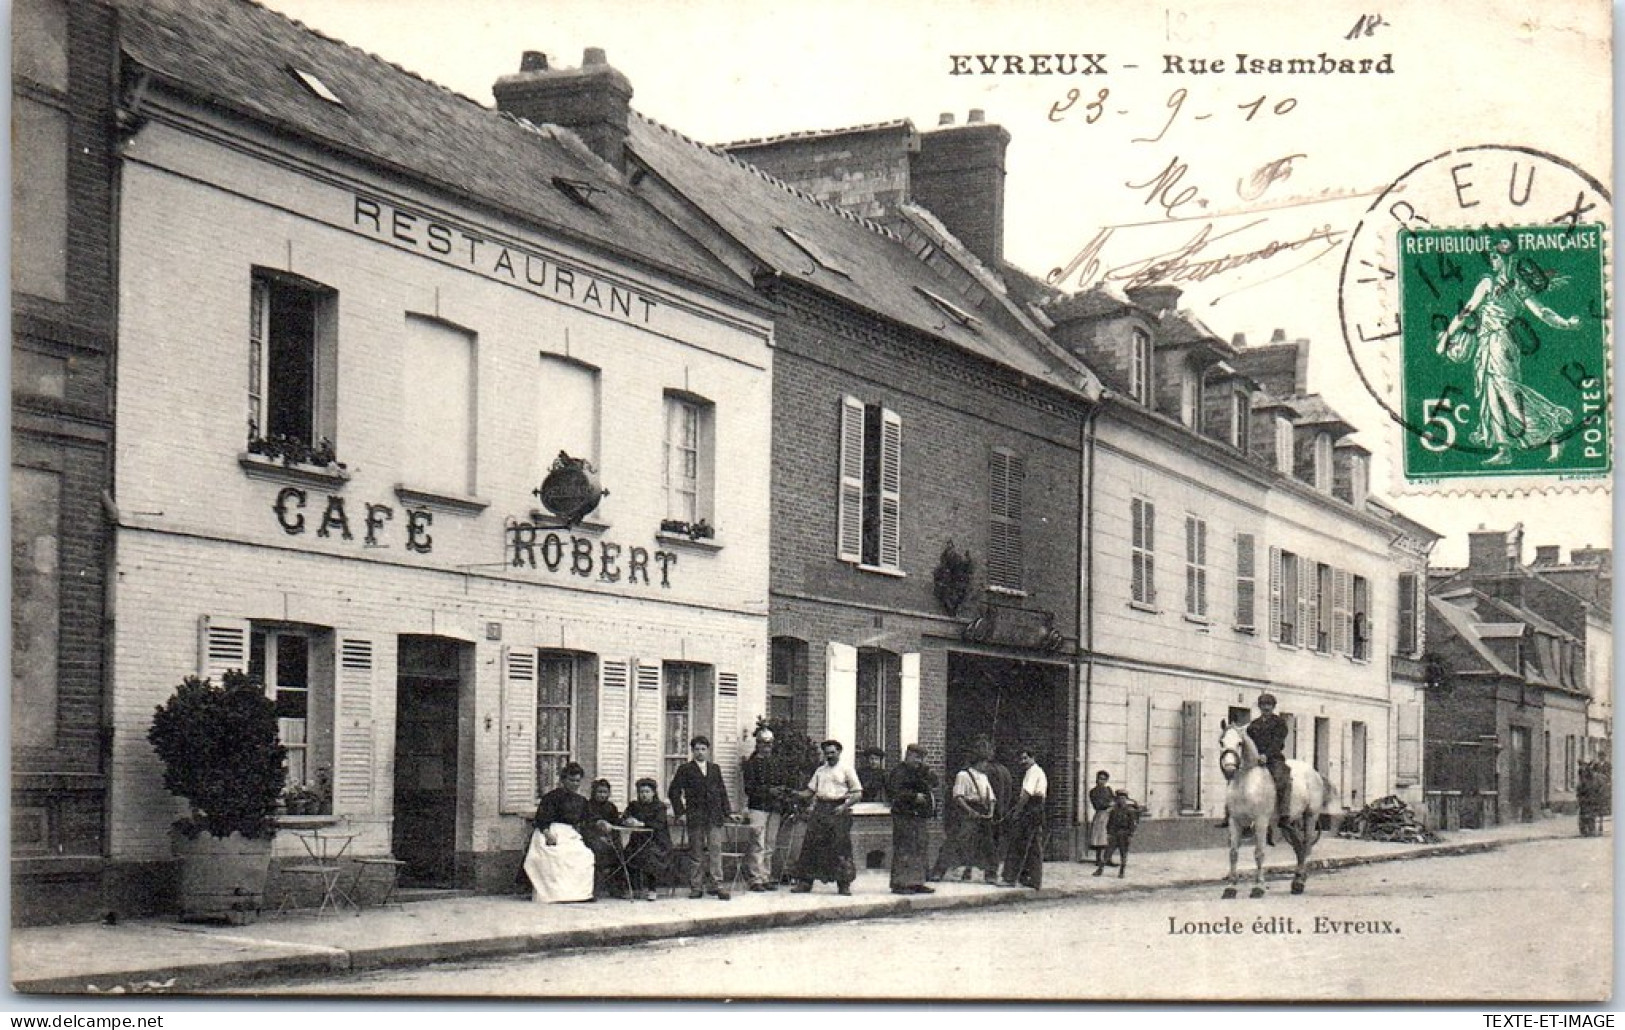 27 EVREUX - La Rue Isambard.  - Evreux